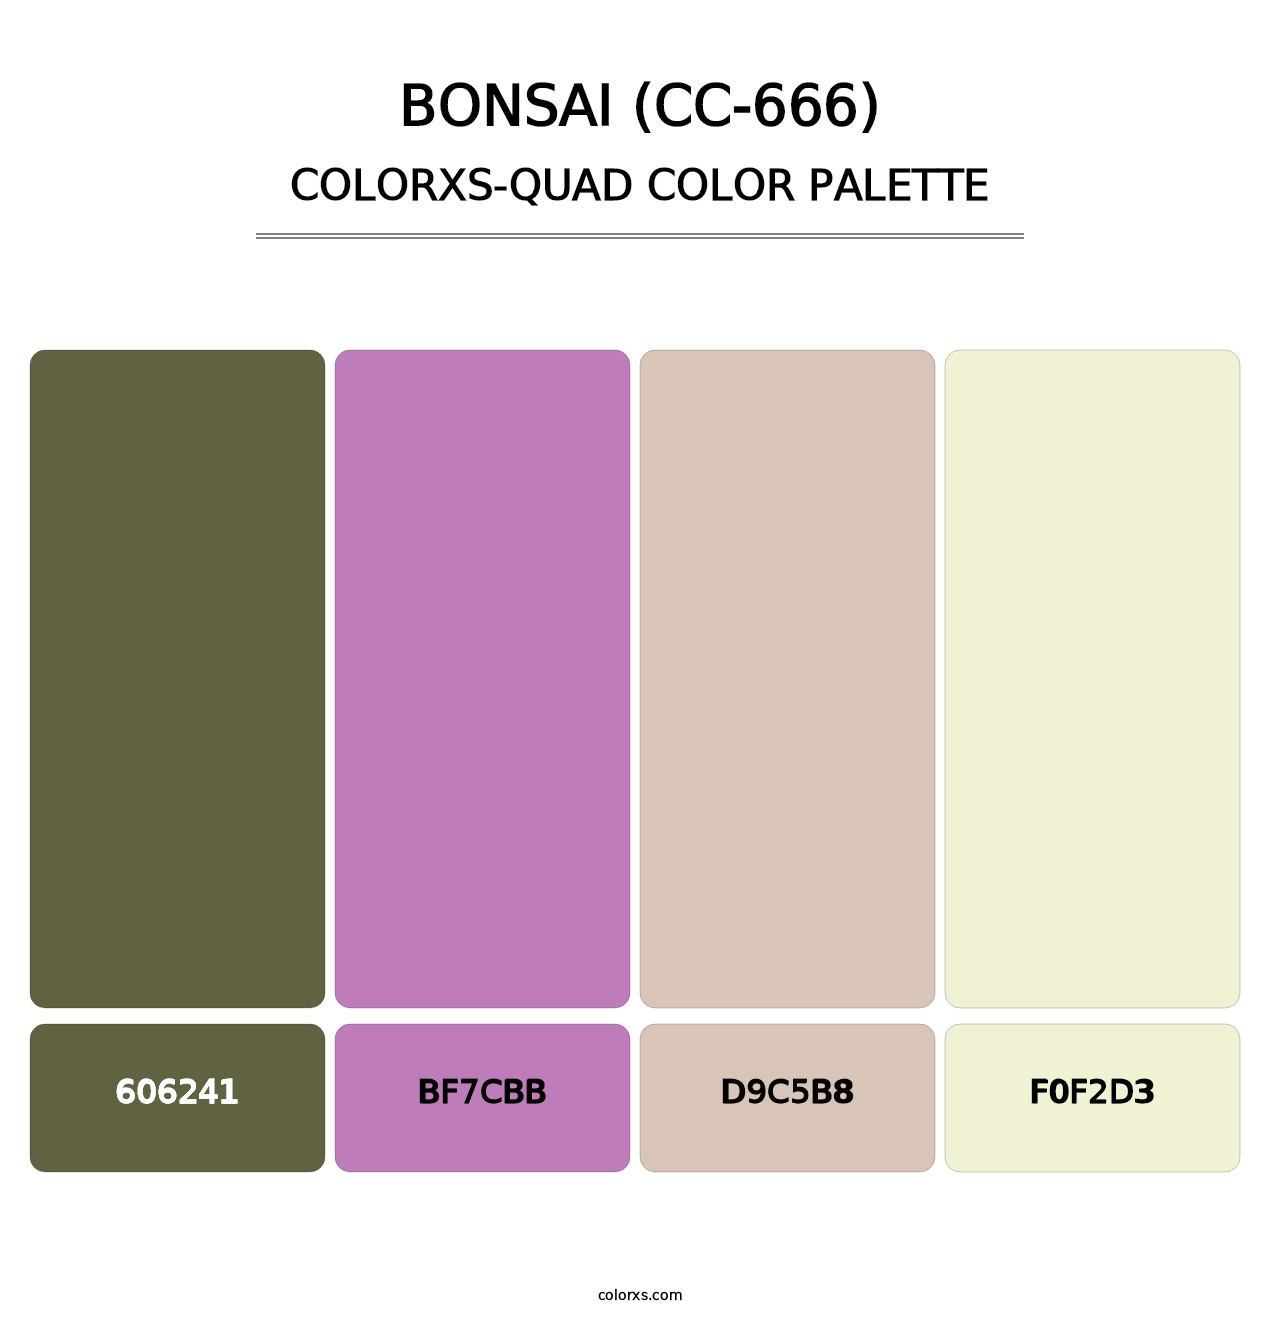 Bonsai (CC-666) - Colorxs Quad Palette